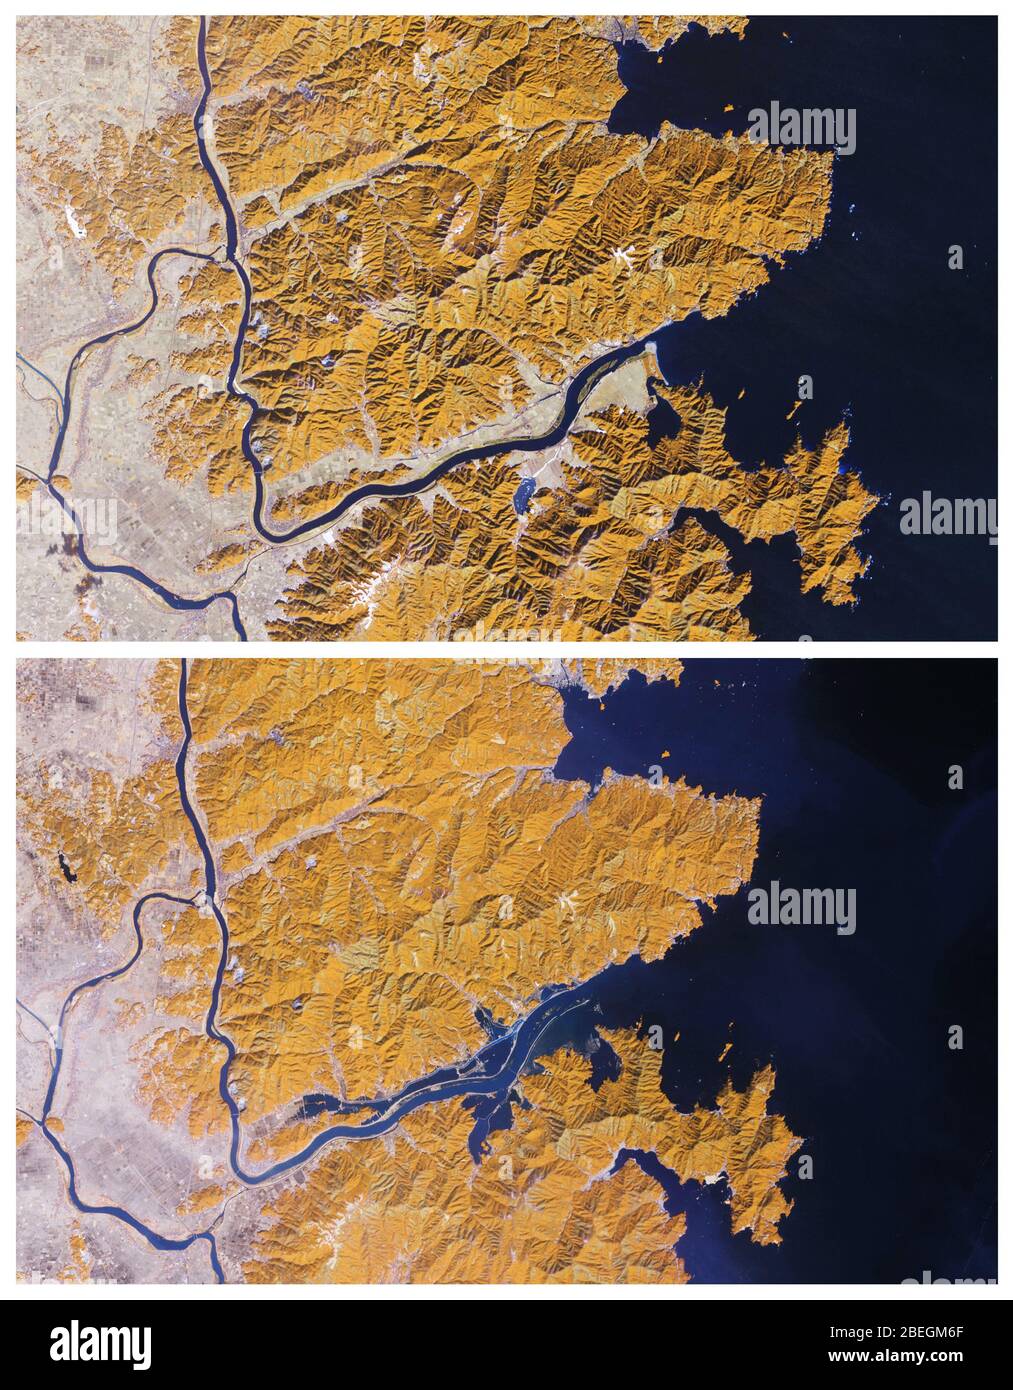 Japan's Kitakami River Before and After 2011 Tsunami Stock Photo